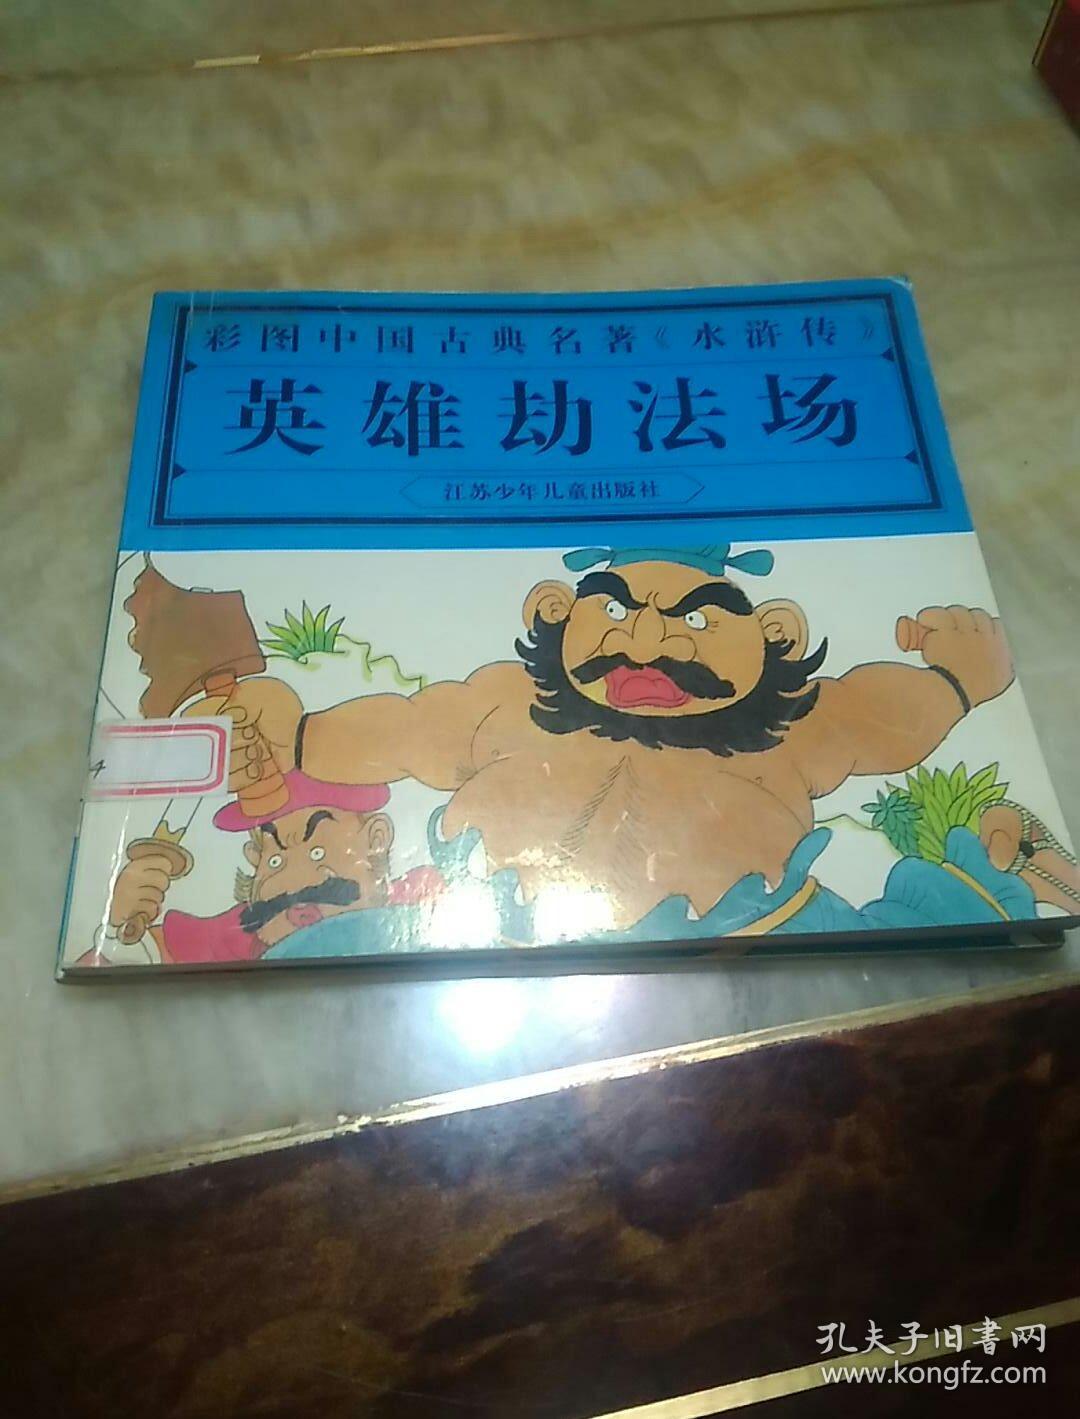 彩图中国古典名著《水浒传》.英雄劫法场